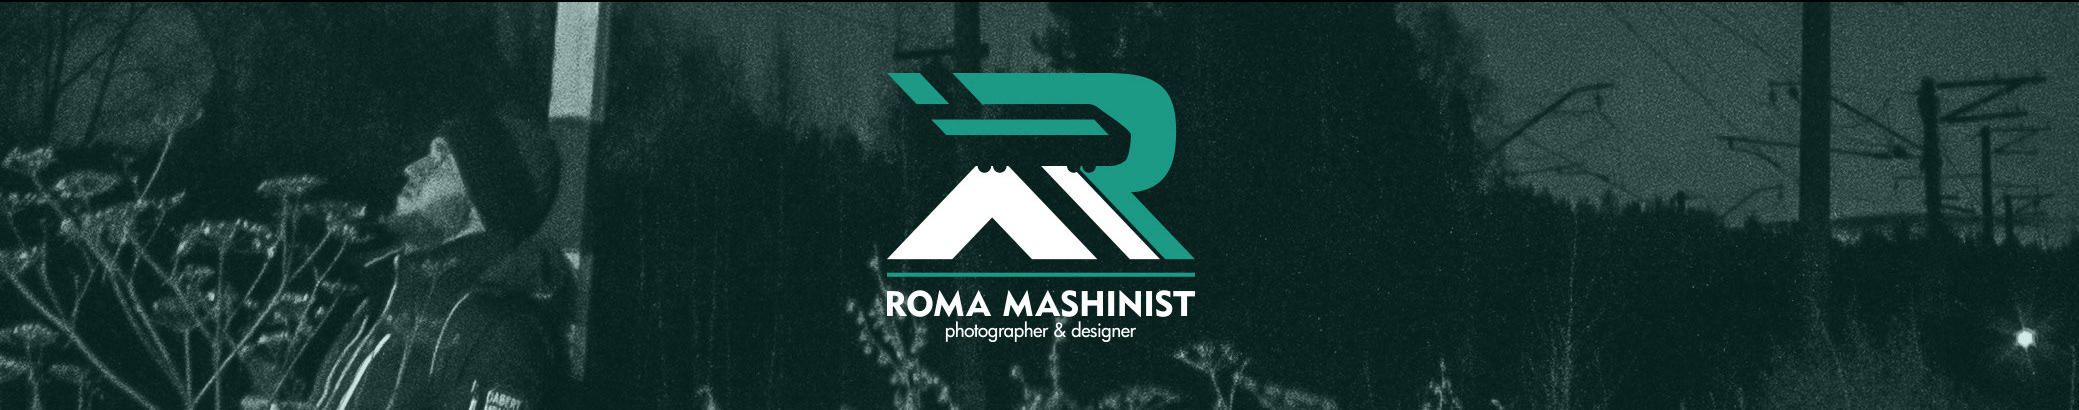 Baner profilu użytkownika Roma Mashinist